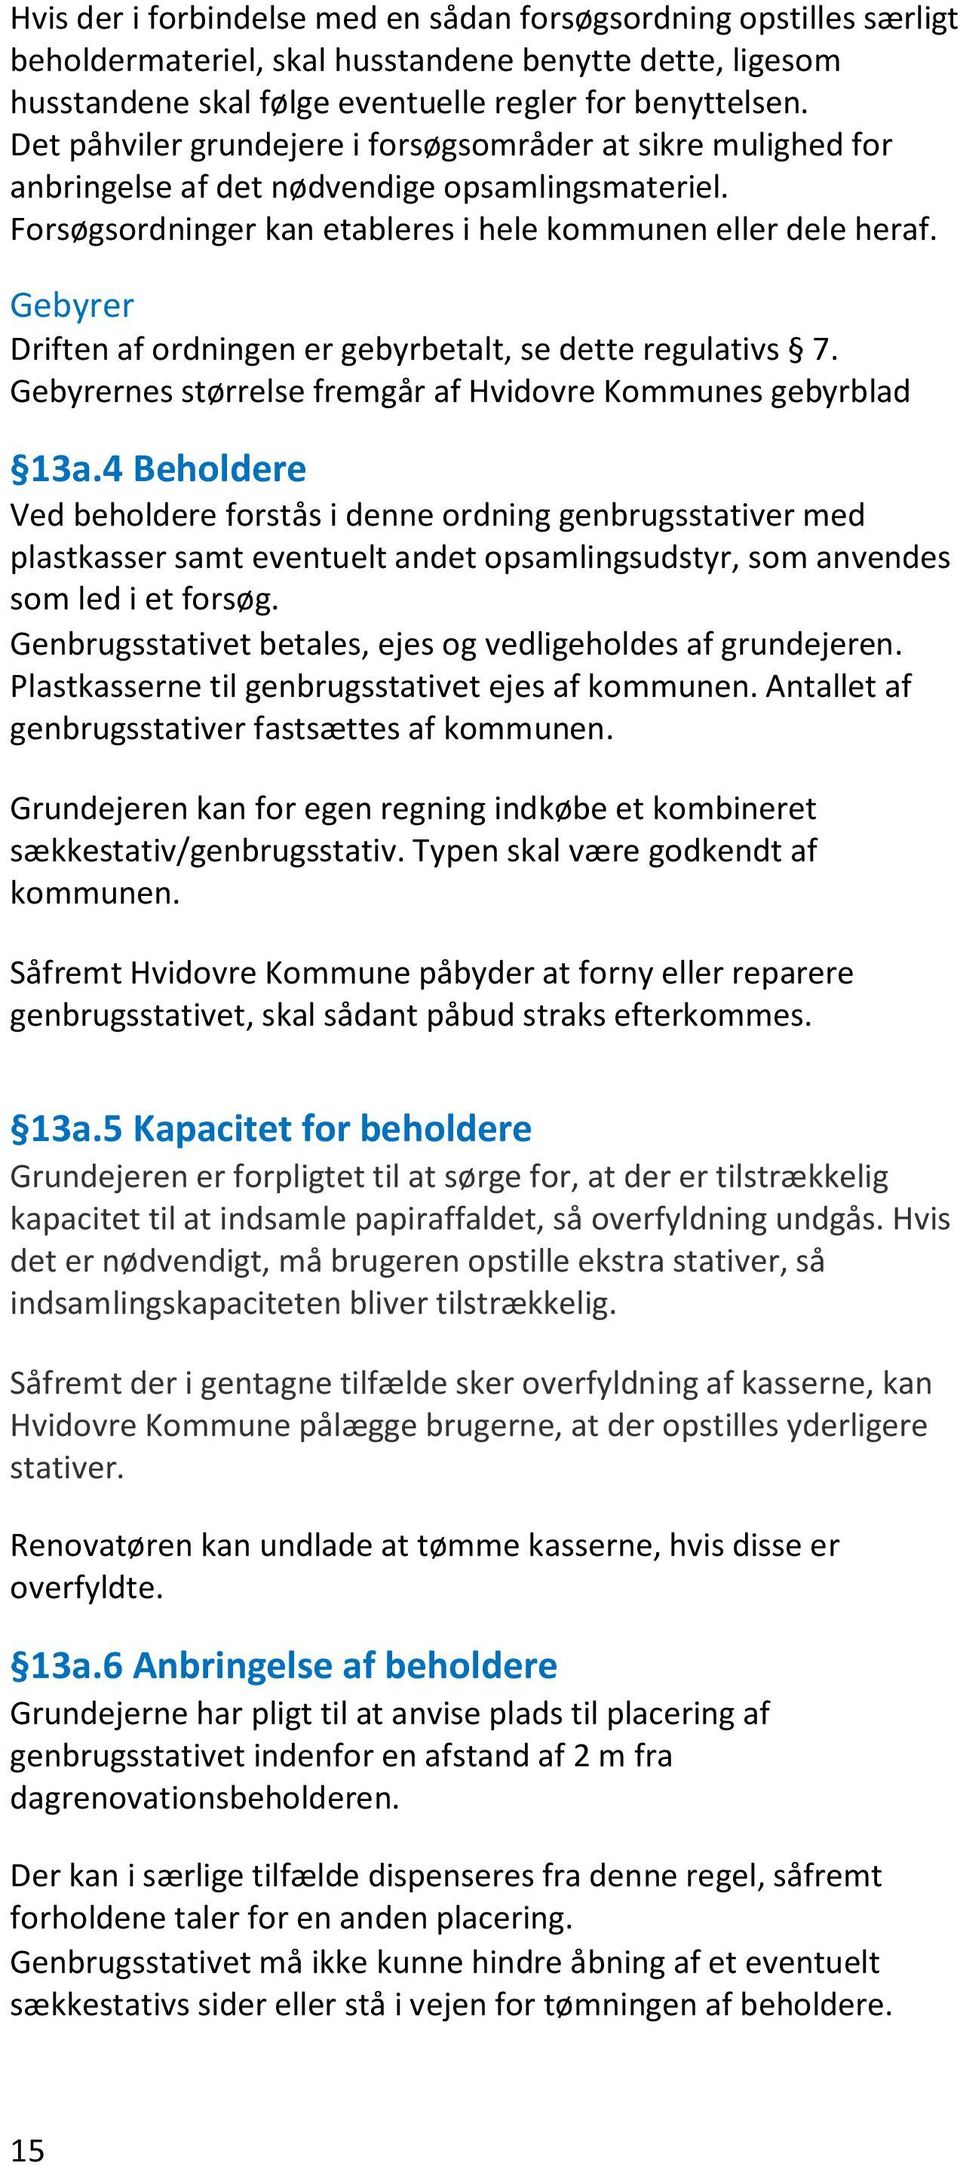 Gebyrer Driften af ordningen er gebyrbetalt, se dette regulativs 7. Gebyrernes størrelse fremgår af Hvidovre Kommunes gebyrblad 13a.